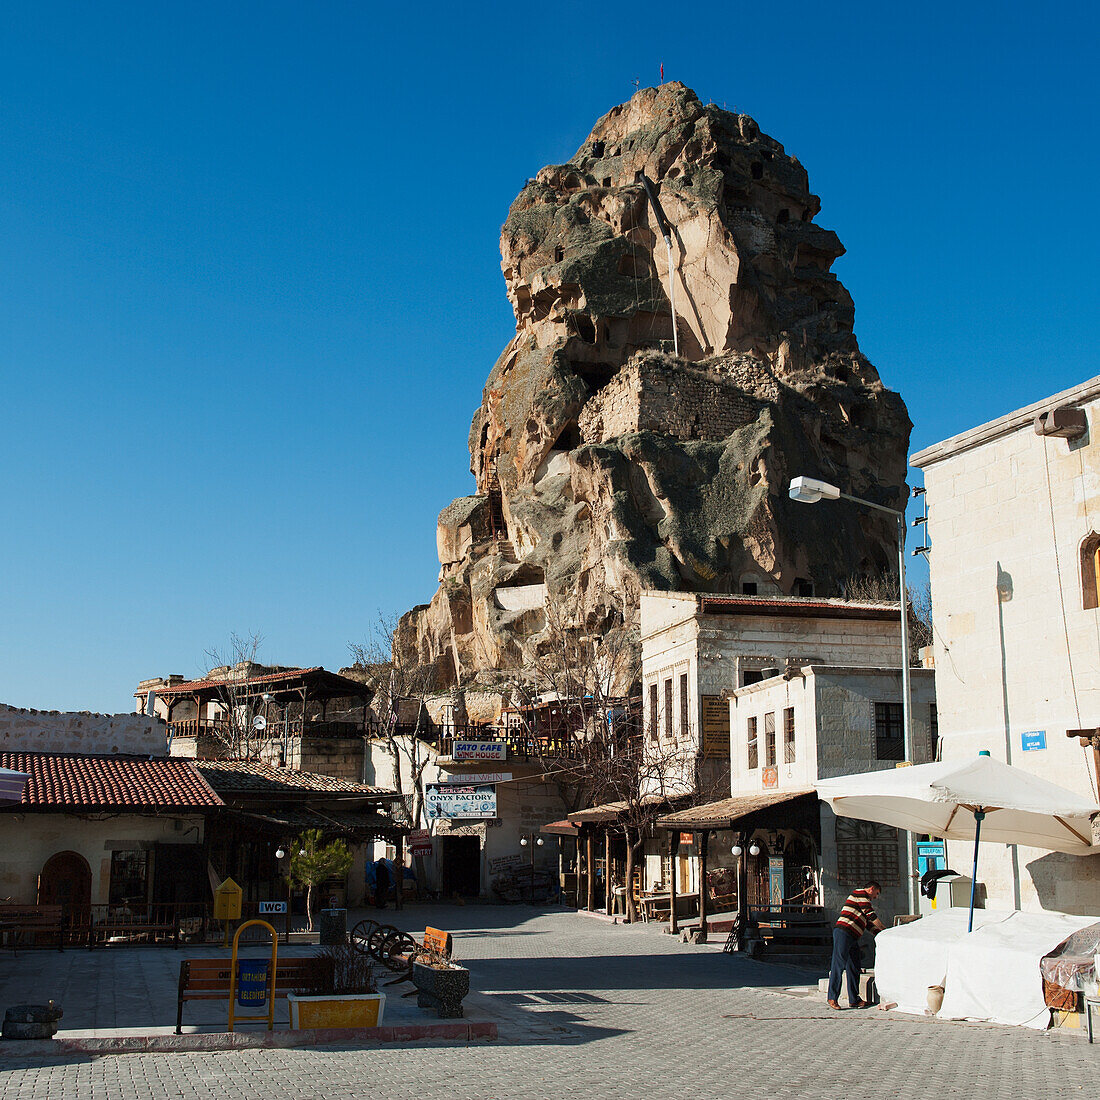 Eine große Felsformation (Burg von Ortahisar) gegen einen blauen Himmel in einem städtischen Gebiet; Ortahisar Nevsehir Türkei